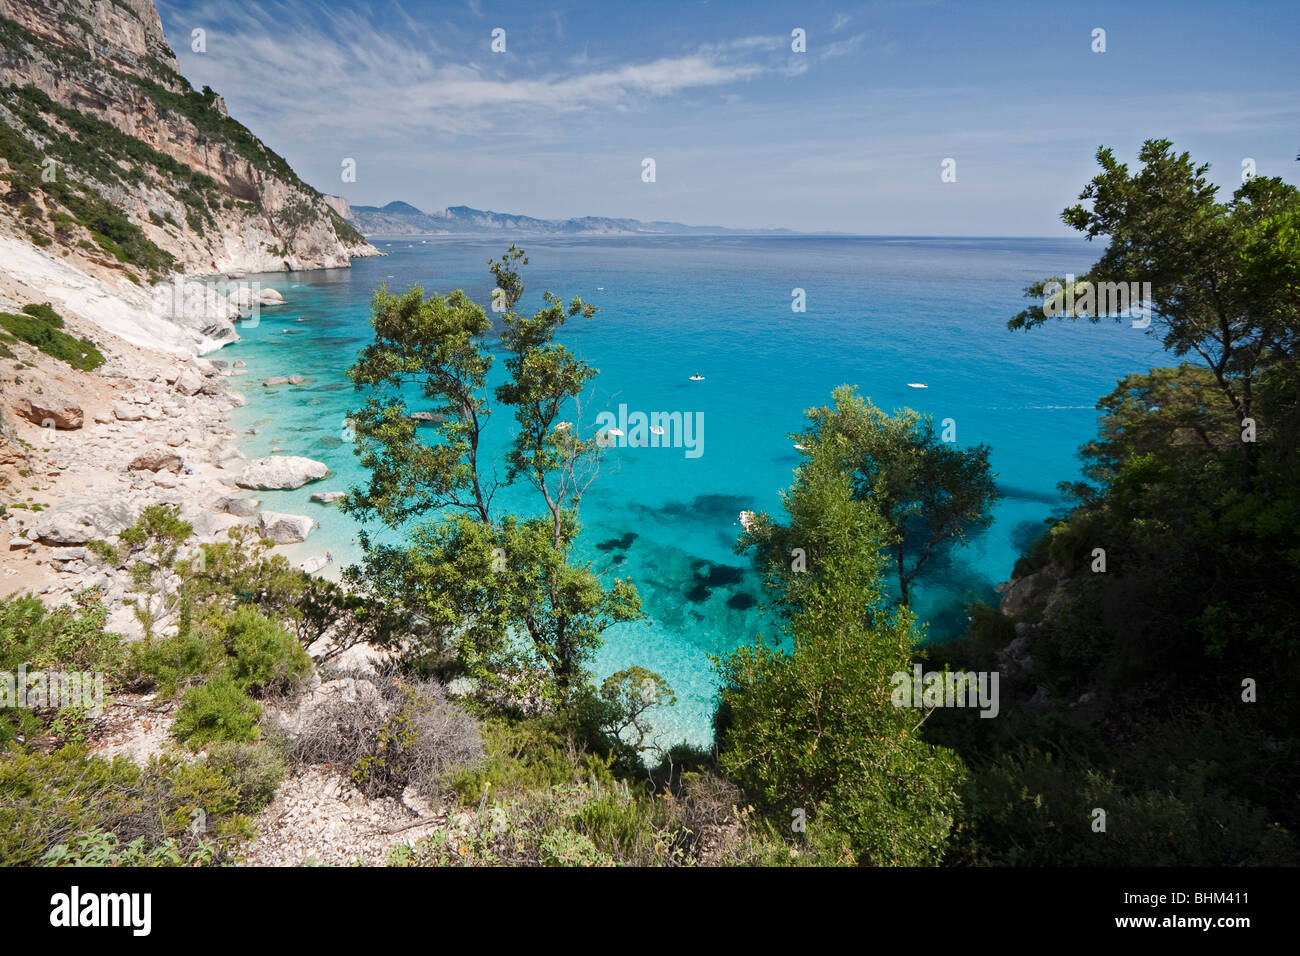 Leere Bucht Cala Goloritze Strand, Insel Sardinien Italien. Klares blaues Wasser in Cala Goloritzè Bucht, Mittelmeer. Stockfoto